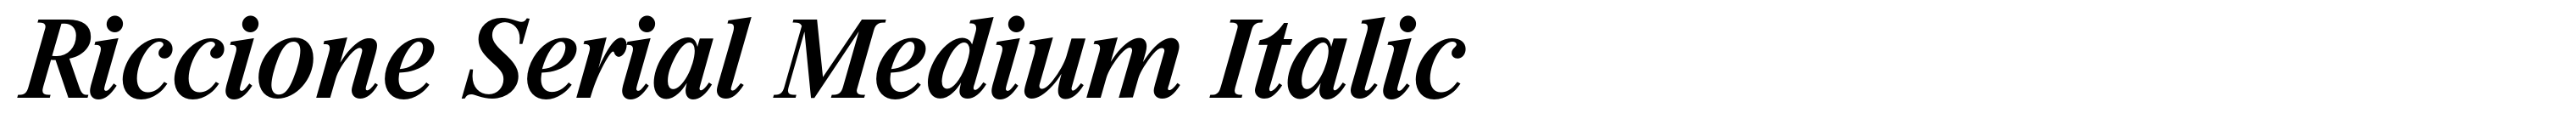 Riccione Serial Medium Italic